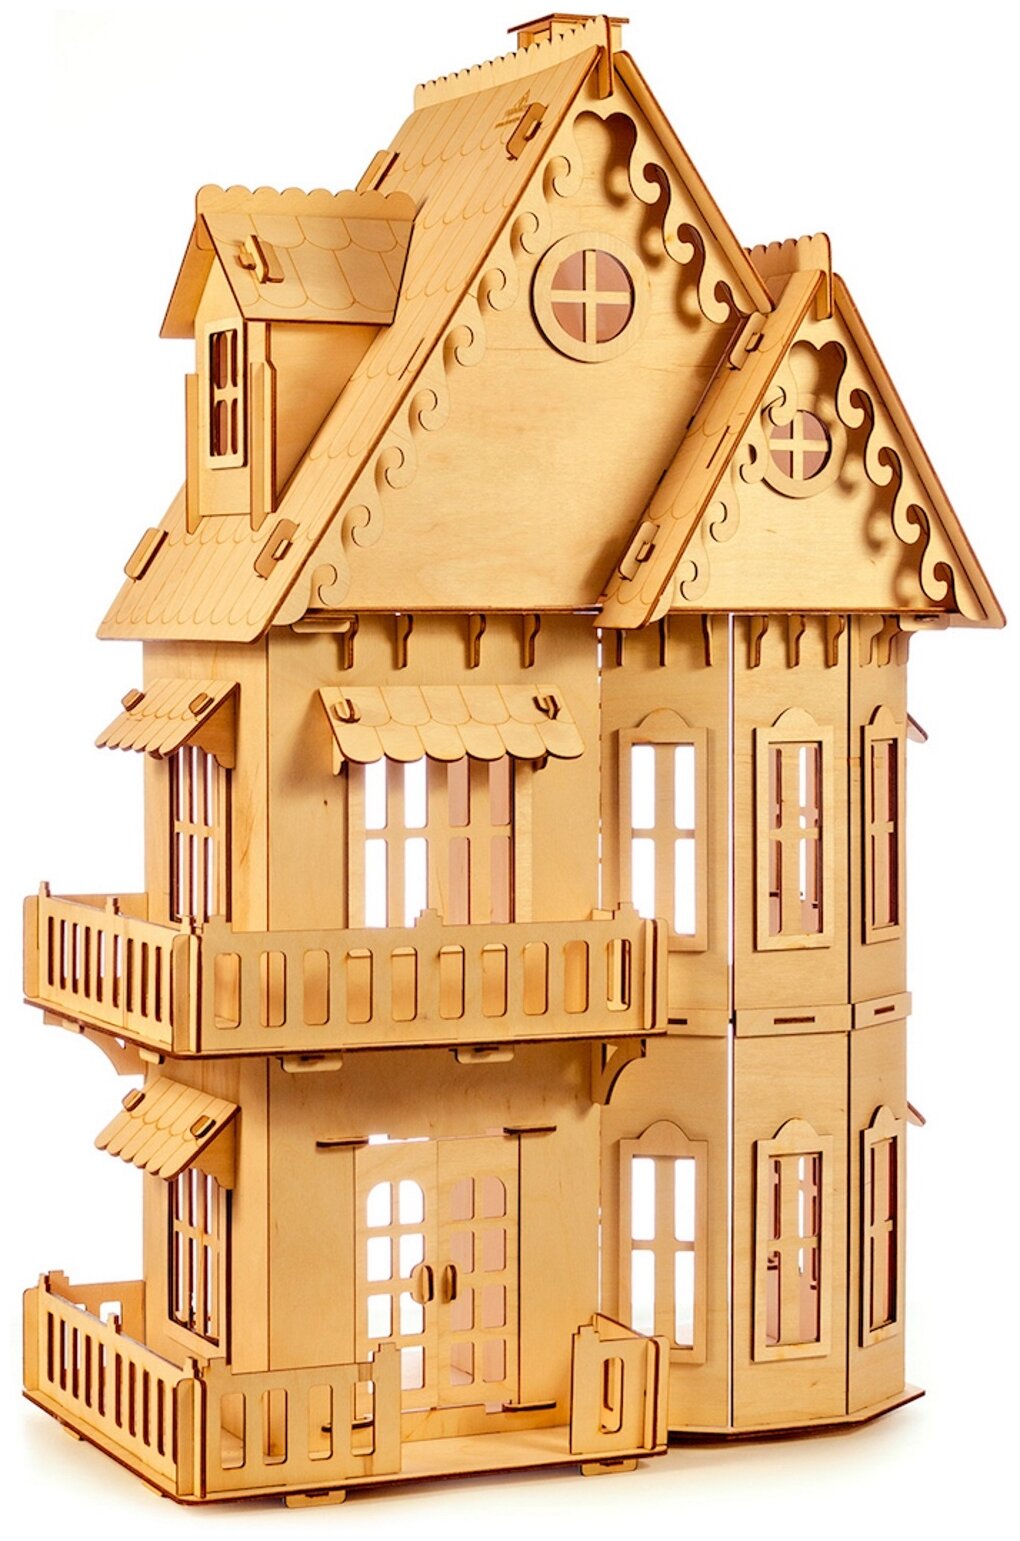 Сборная модель Теремок Большой кукольный дом КД-2 — купить по низкой цене на Яндекс Маркете